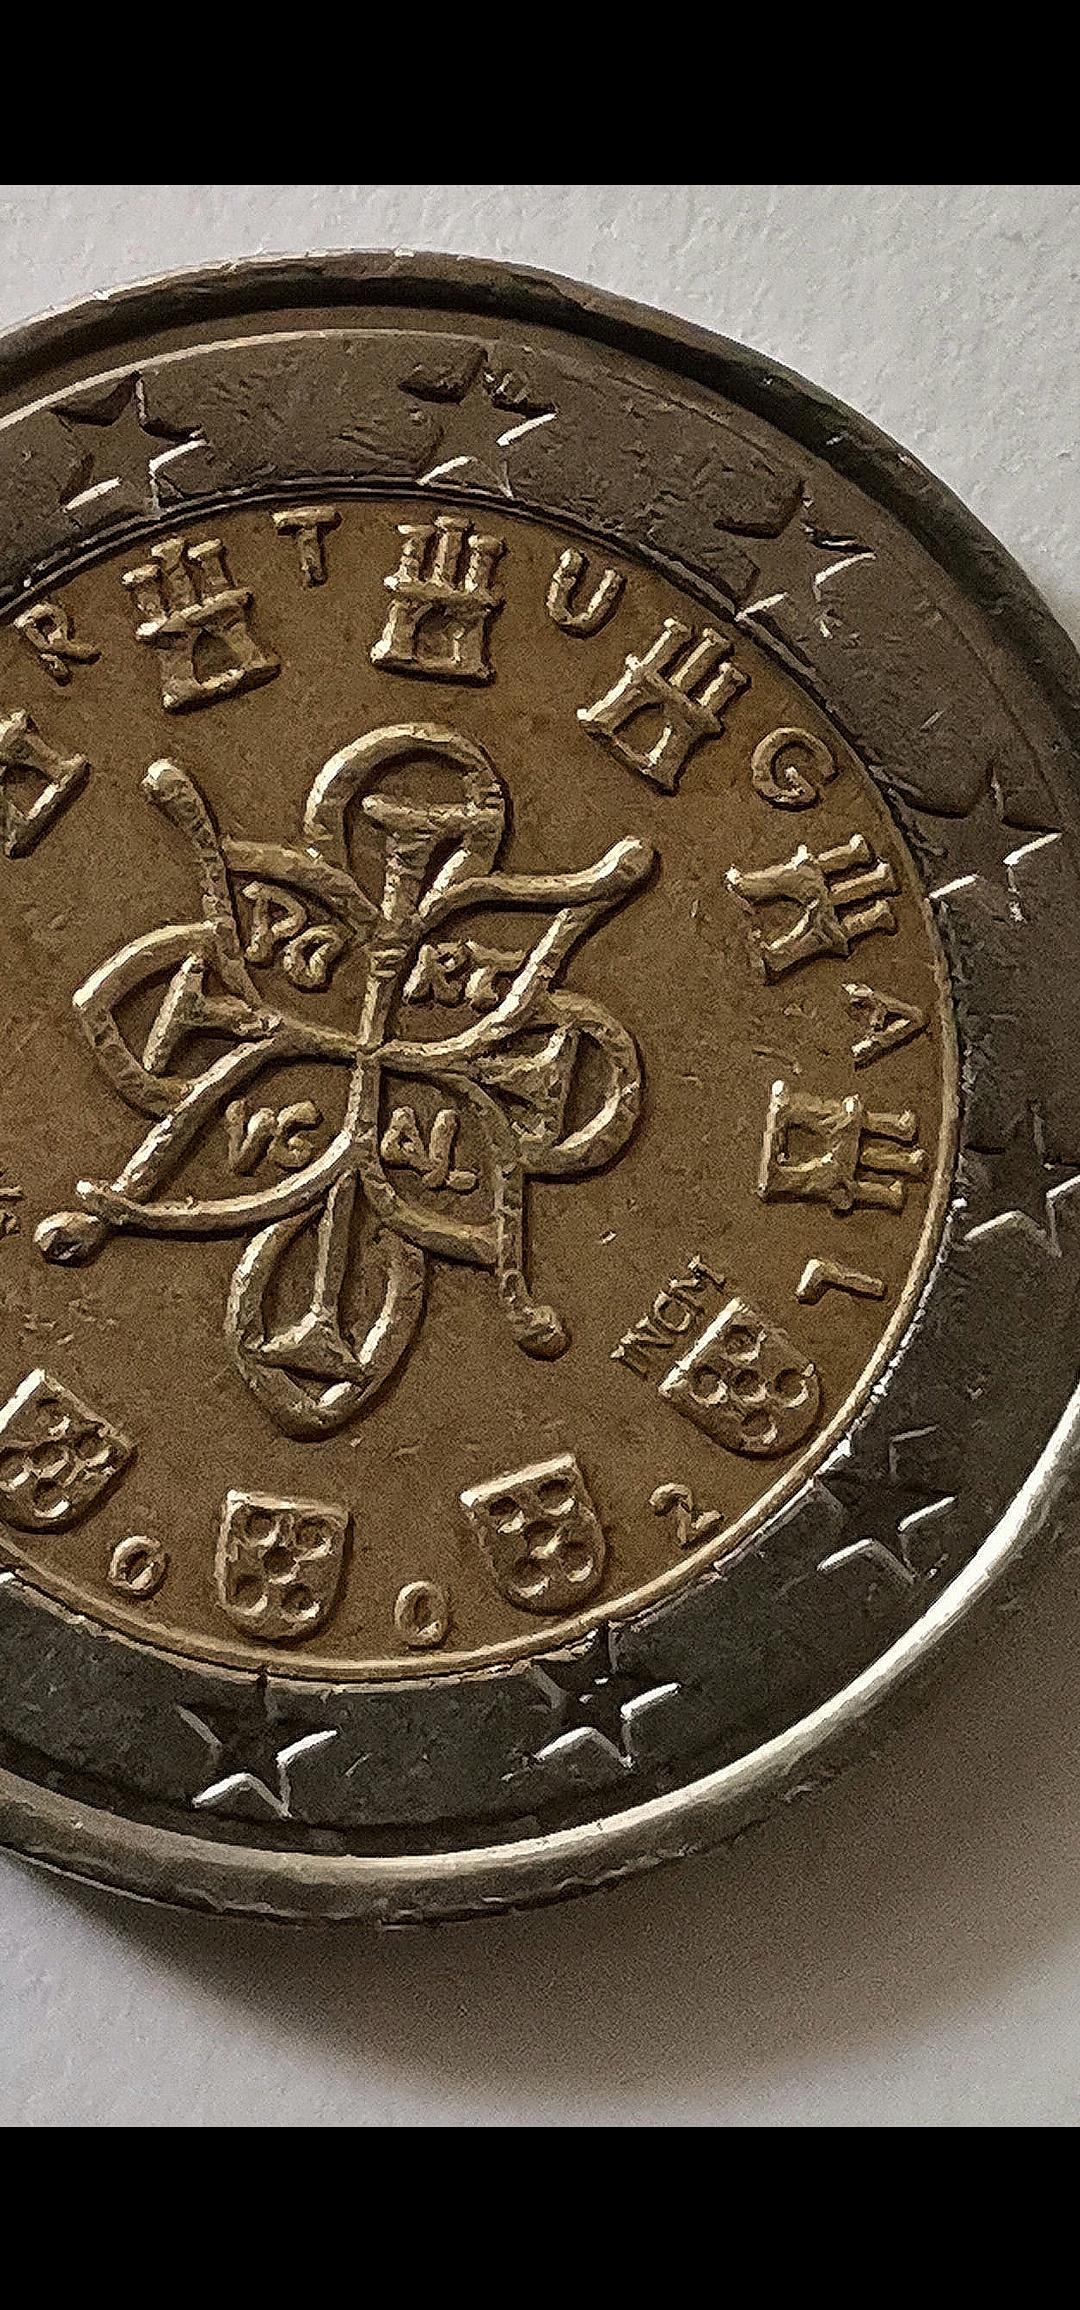 2 euro münze 2002 Portugal mit mehreren fehlprägungen